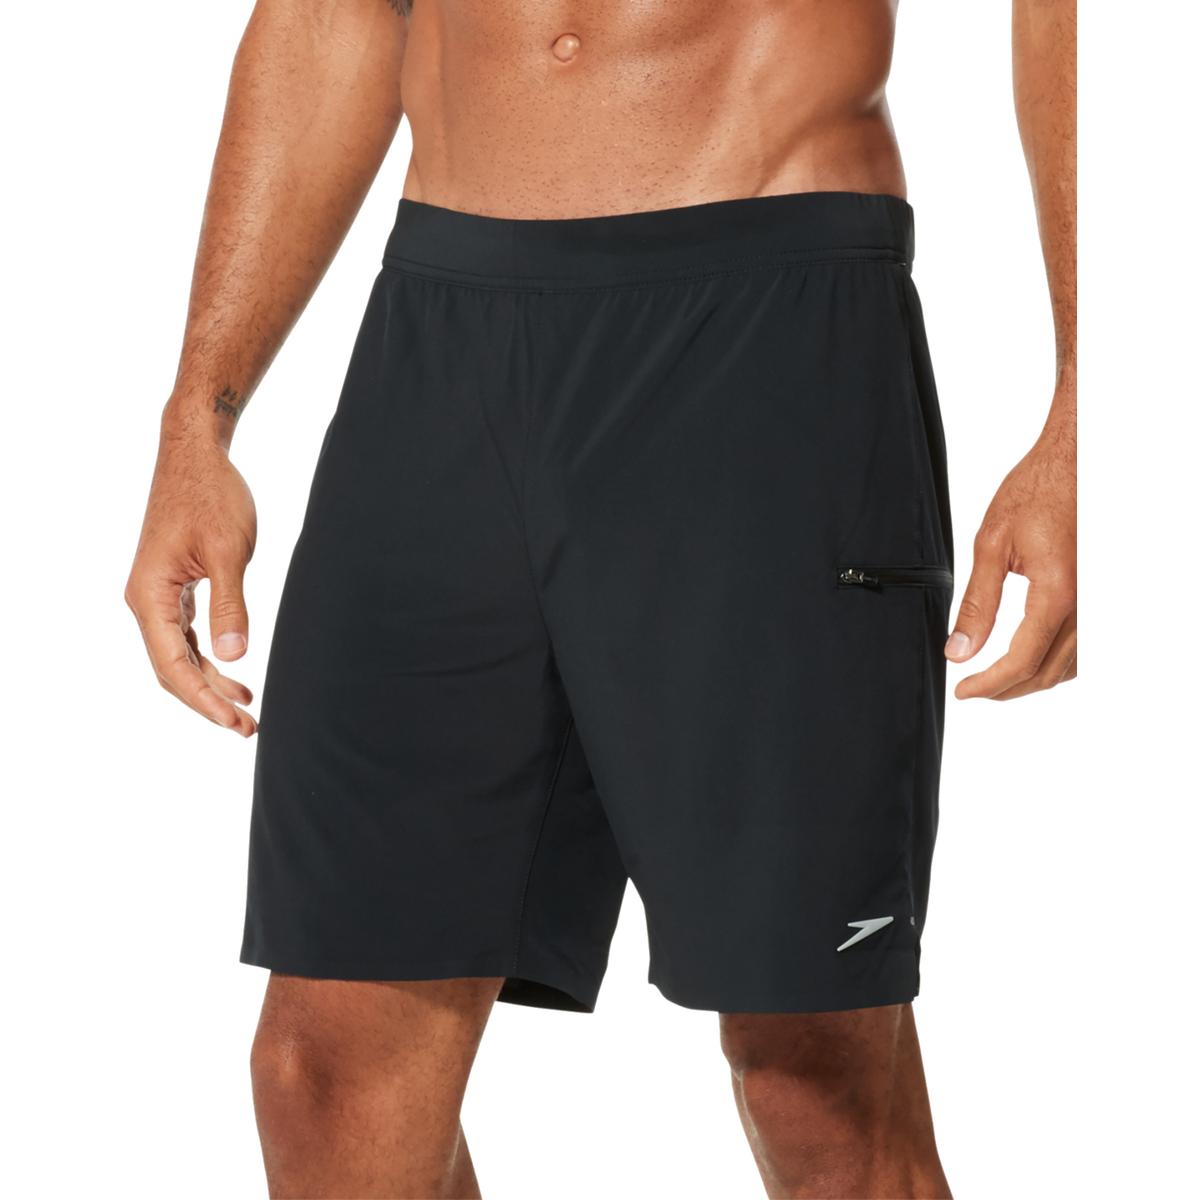 Speedo Mens Black W Polyester Shorts M BHFO 5327 | eBay